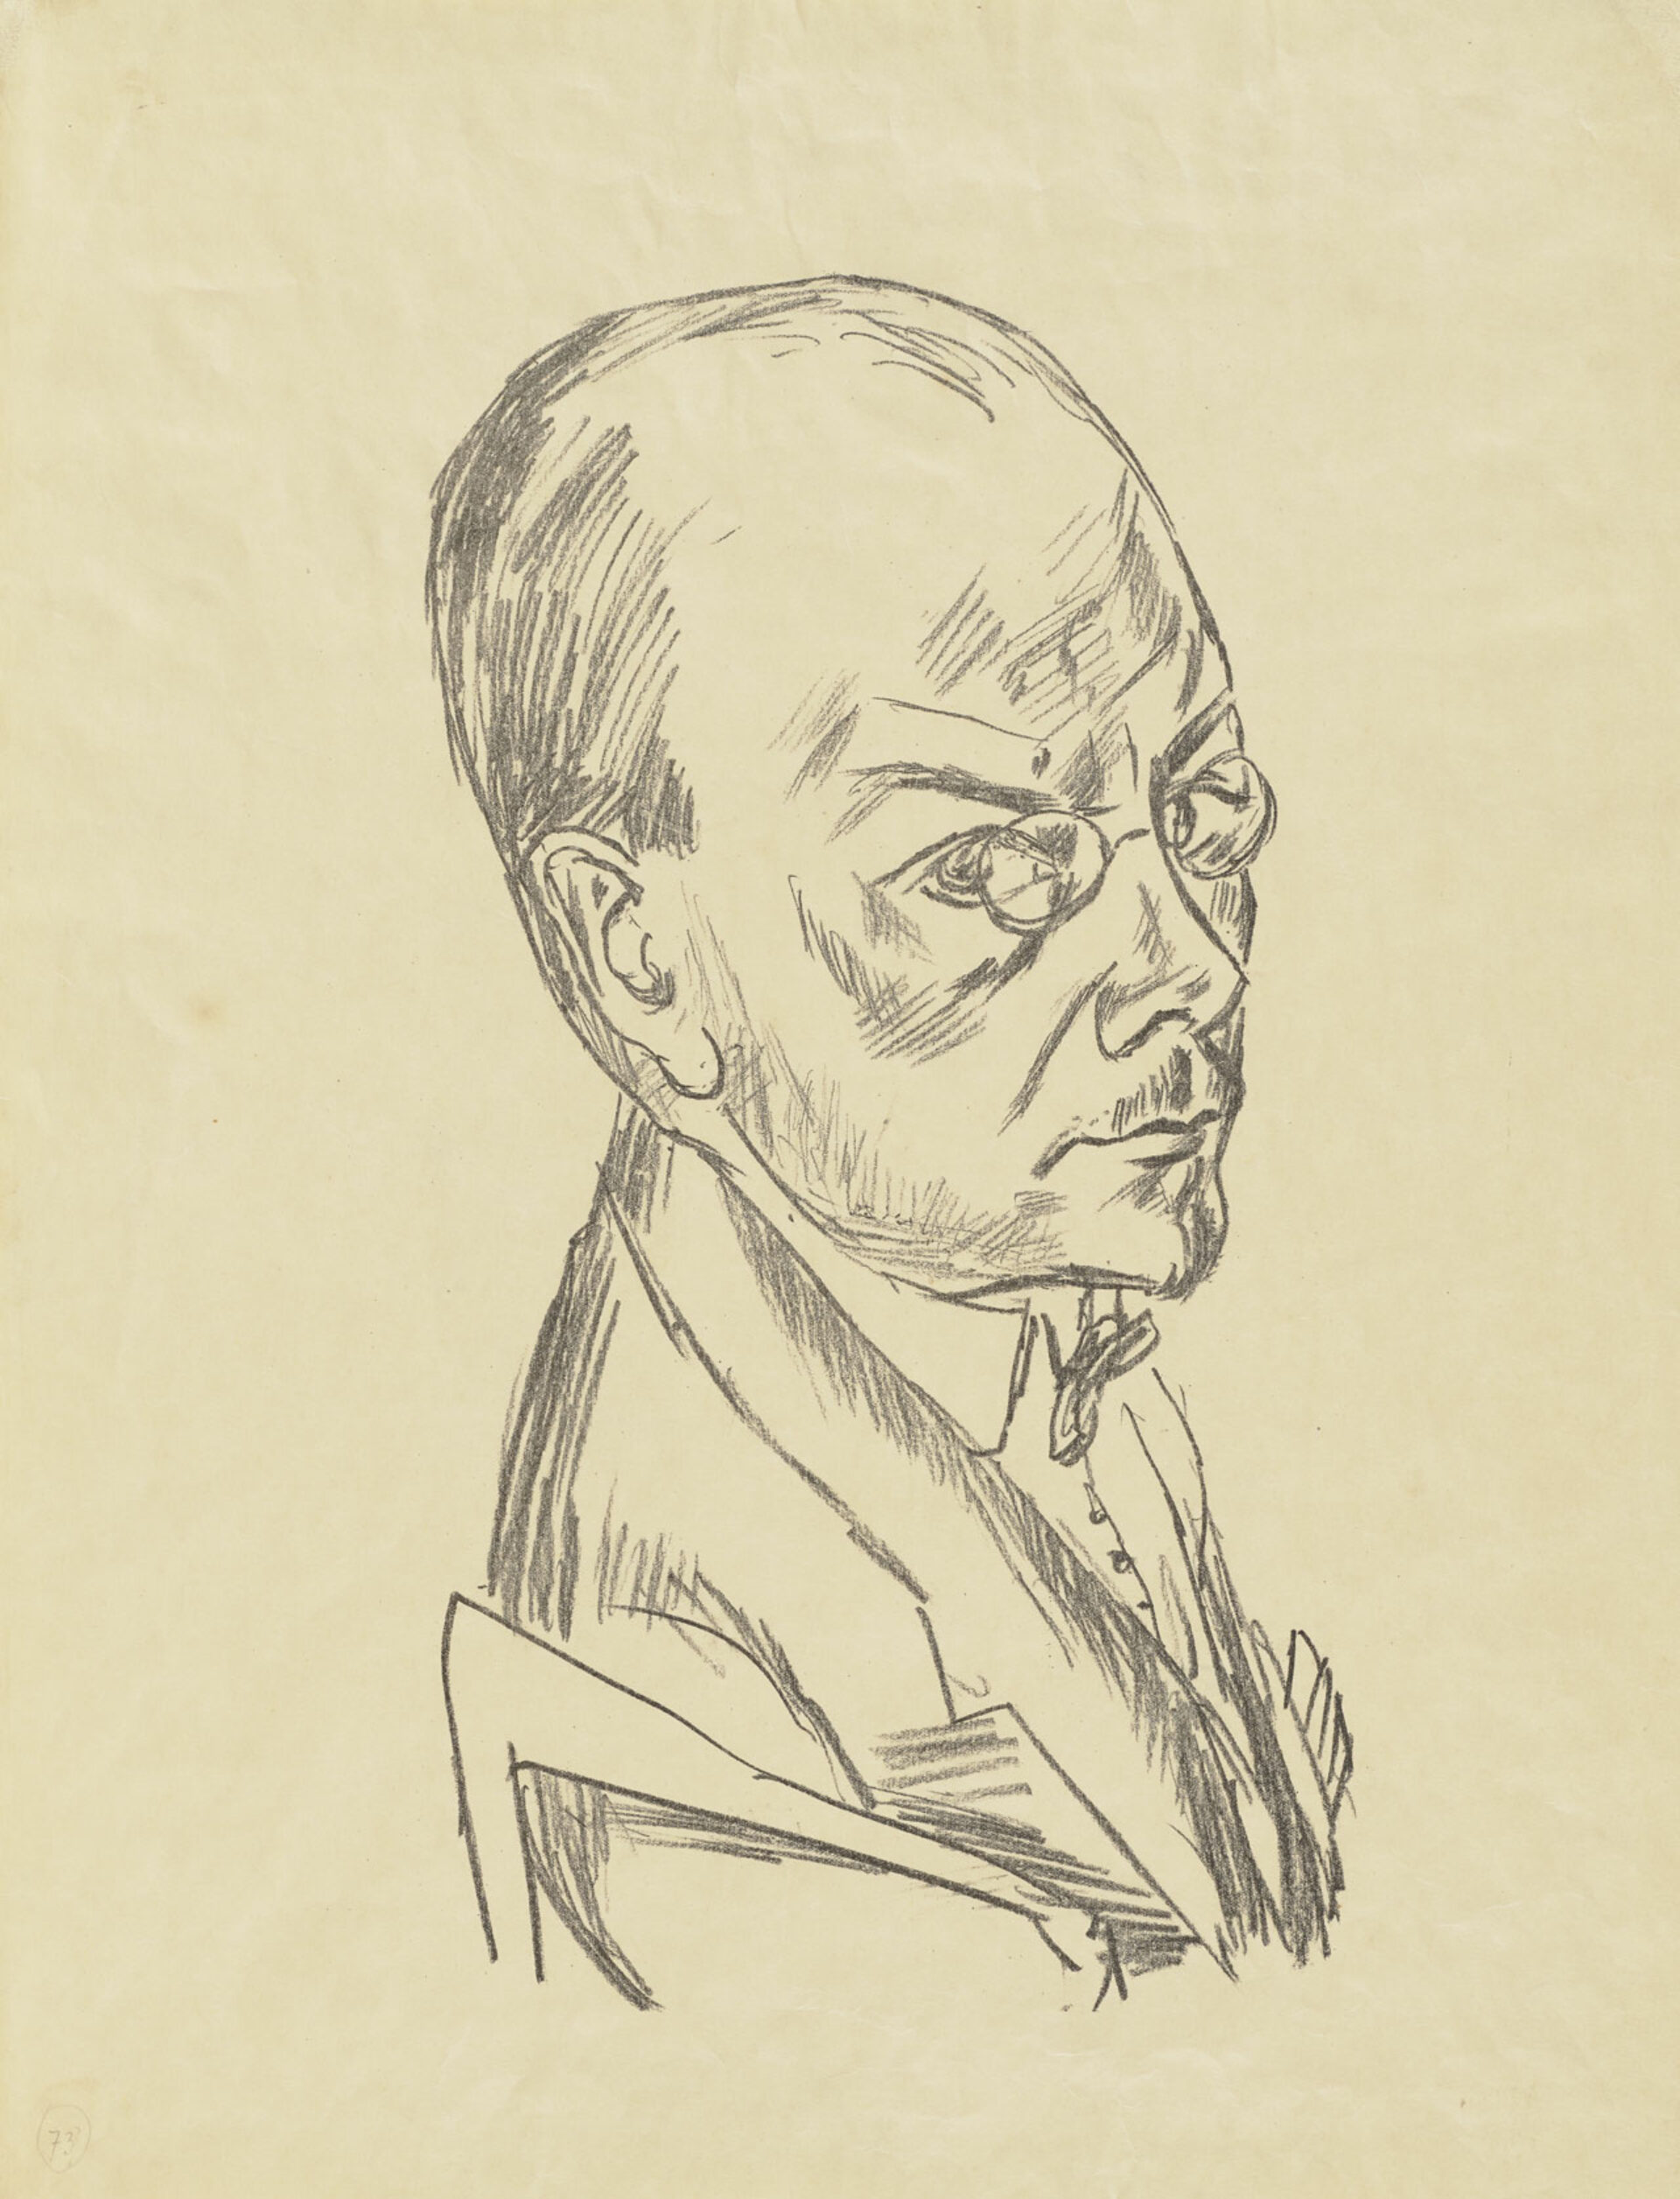 Max Beckmann, Bildnis Georg Swarzenski, 1921, Lithographie, Städel Museum